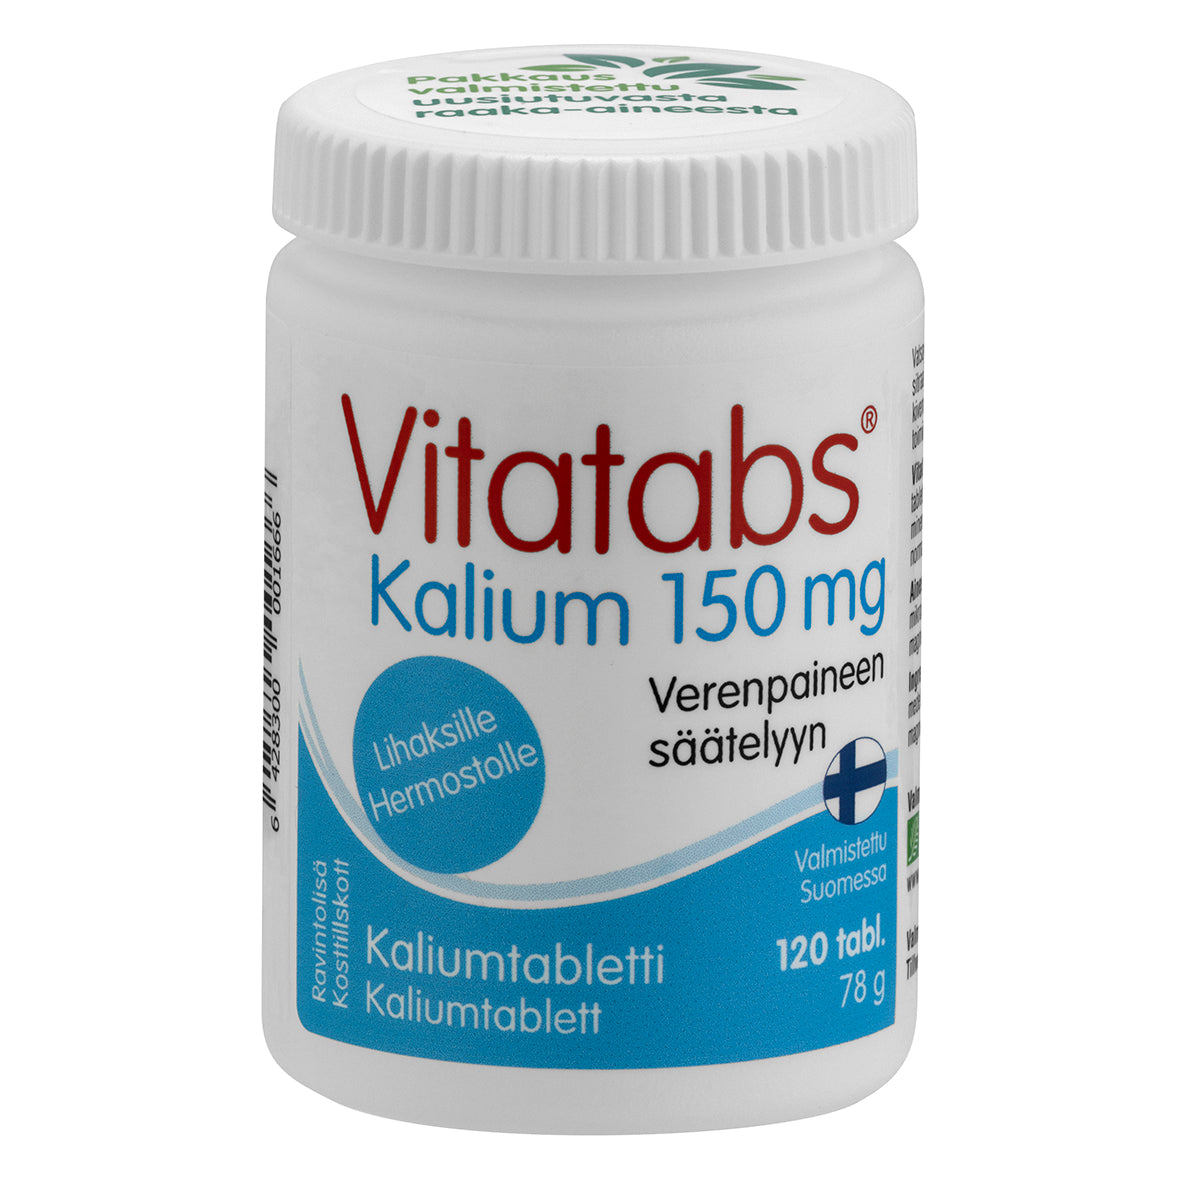 Vitatabs Kalium 150 mg 120 tabl.